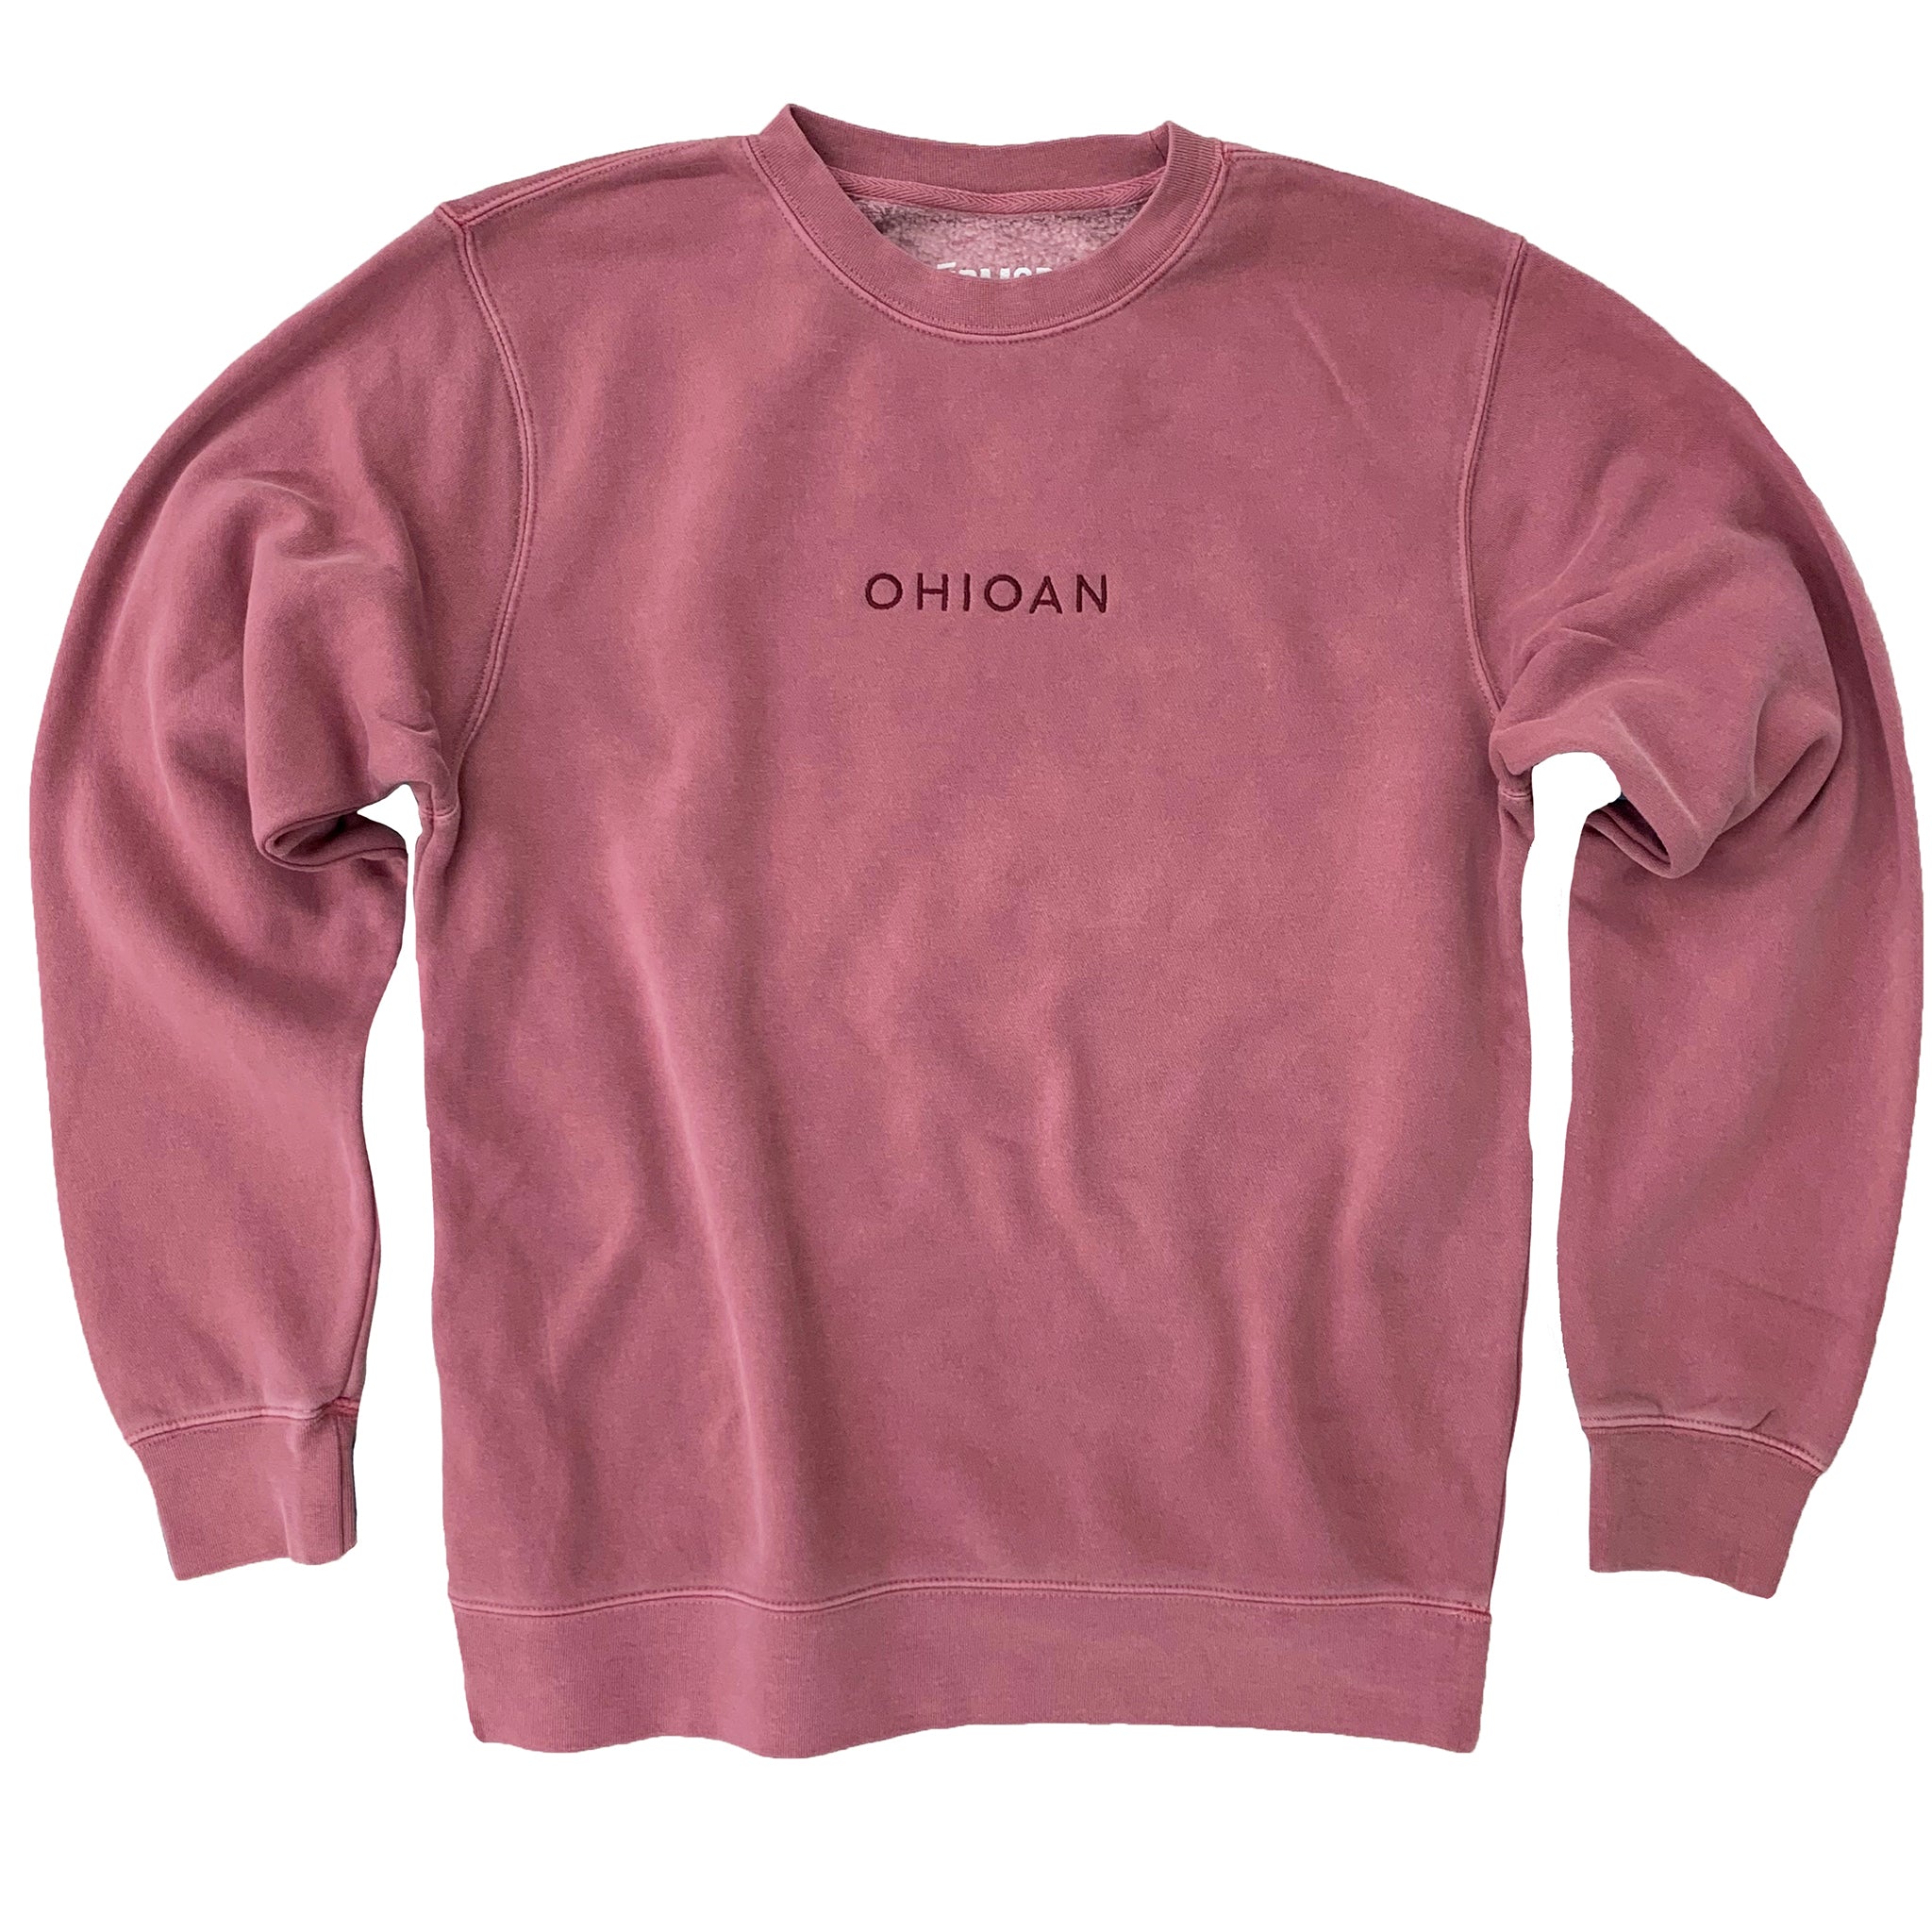 Ohioan Embroidered Sweatshirt